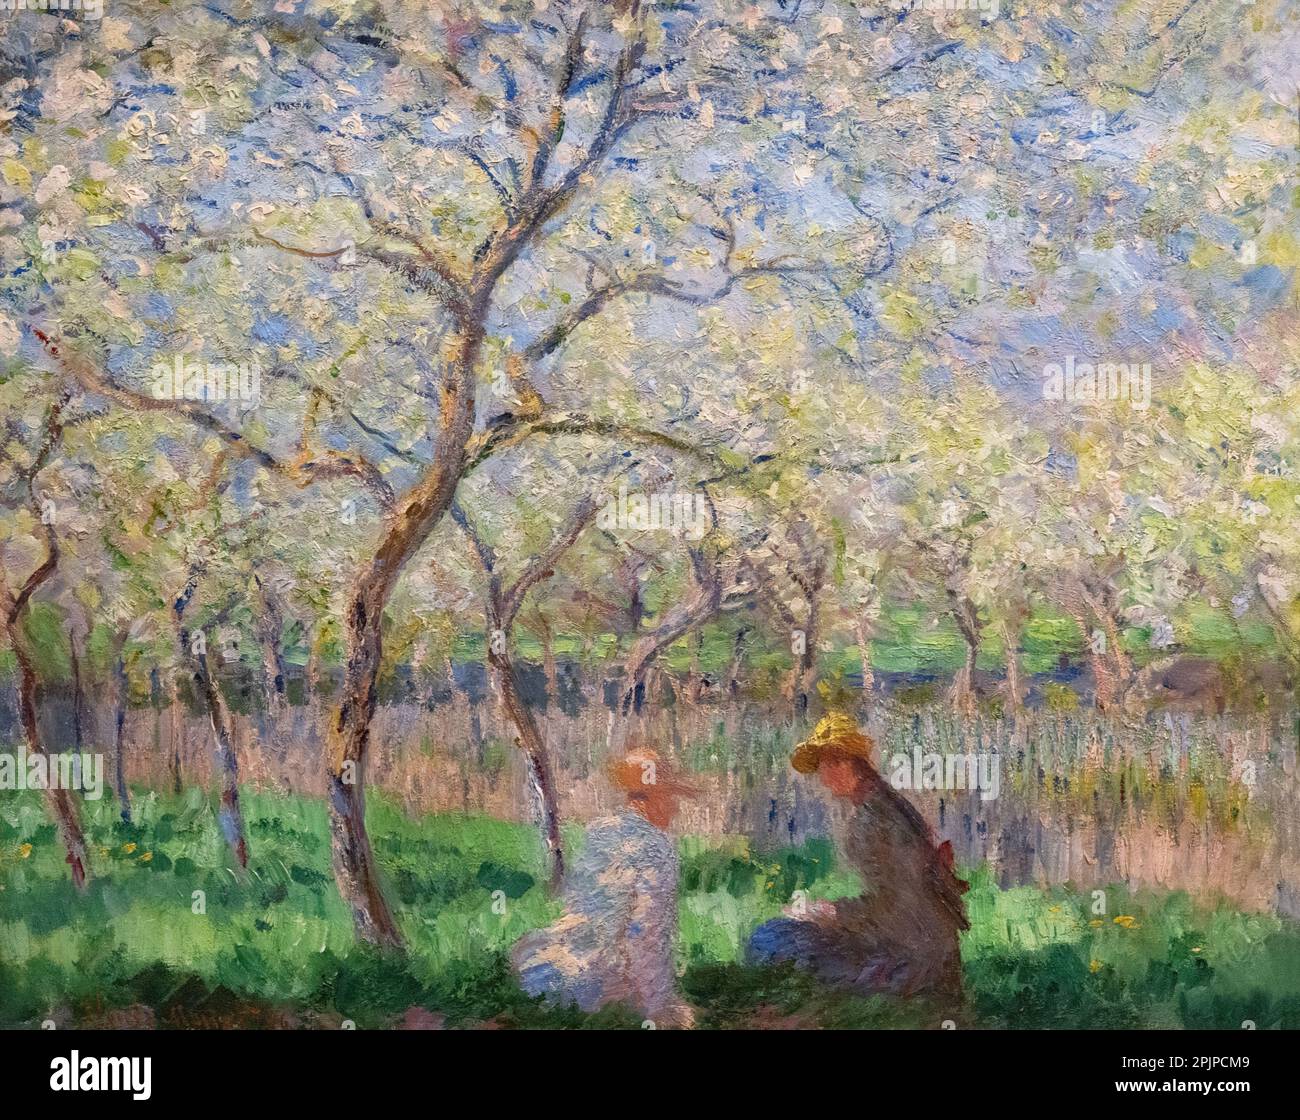 Claude Monet Malerei; Frühling, 1886 Öl auf Leinwand, Giverny, Frankreich; französischer impressionistischer Maler aus dem 19. Jahrhundert. Beispiel des französischen Impressionismus. Stockfoto